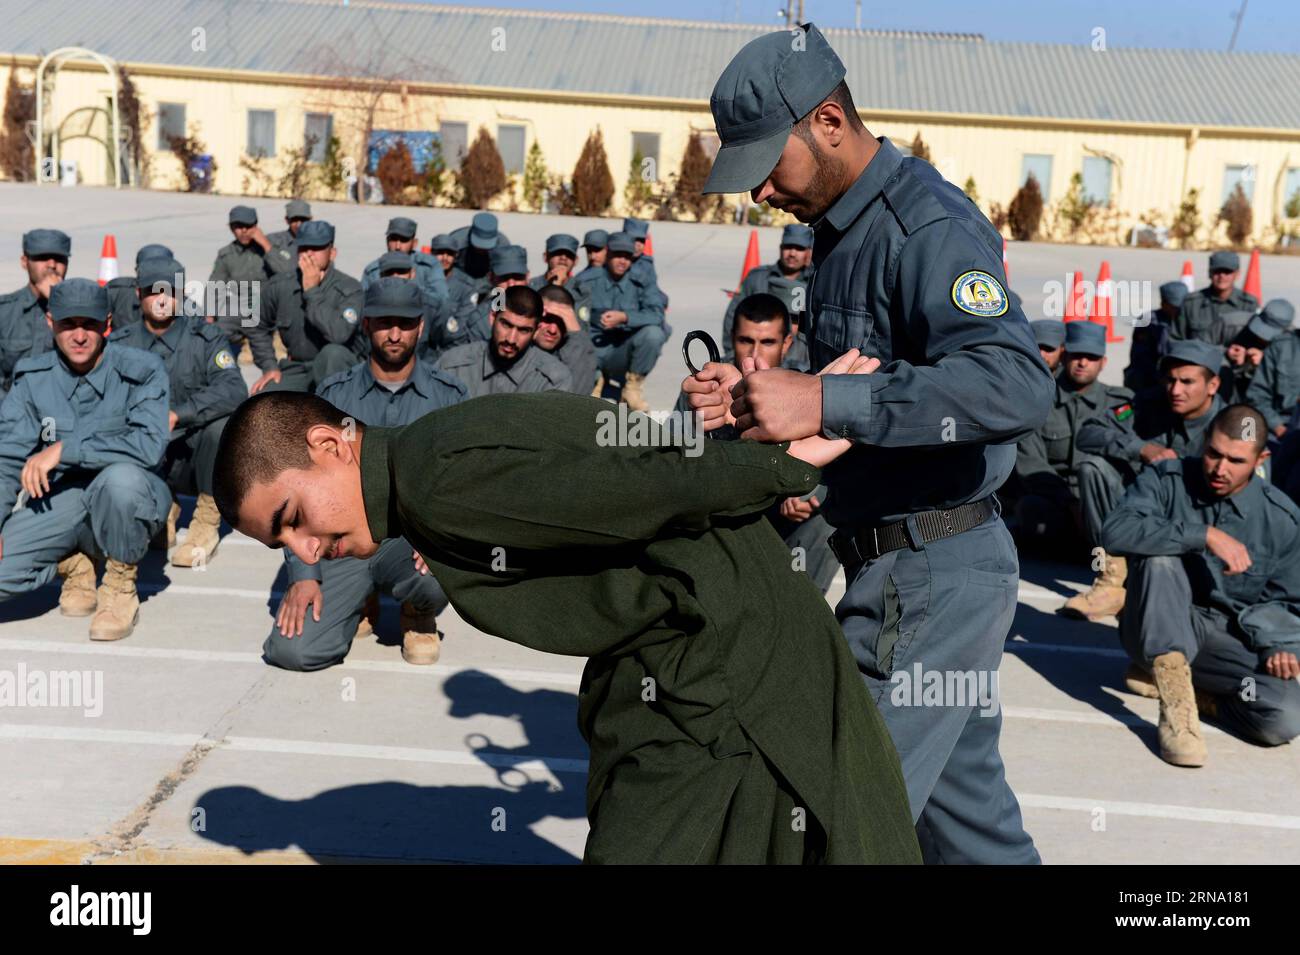 Afghanistan: Ausbildung von Polizisten in Herat (151229) -- HERAT, 28 dicembre 2015 -- poliziotti afghani partecipano ad un addestramento militare presso il centro di addestramento della polizia di Guzara nella provincia di Herat, Afghanistan occidentale, 28 dicembre 2015. Circa 950 poliziotti sono stati addestrati al centro nella provincia di Herat. Le autorità afghane hanno accelerato l'addestramento delle forze di sicurezza, assumendo le accuse di sicurezza complete da parte delle forze NATO e statunitensi dall'inizio di quest'anno. ) (Azp) AFGHANISTAN-HERAT-ADDESTRAMENTO MILITARE SardarxKarimi PUBLICATIONxNOTxINxCHN Afghanistan formazione da poliziotti a Herat 151 Foto Stock